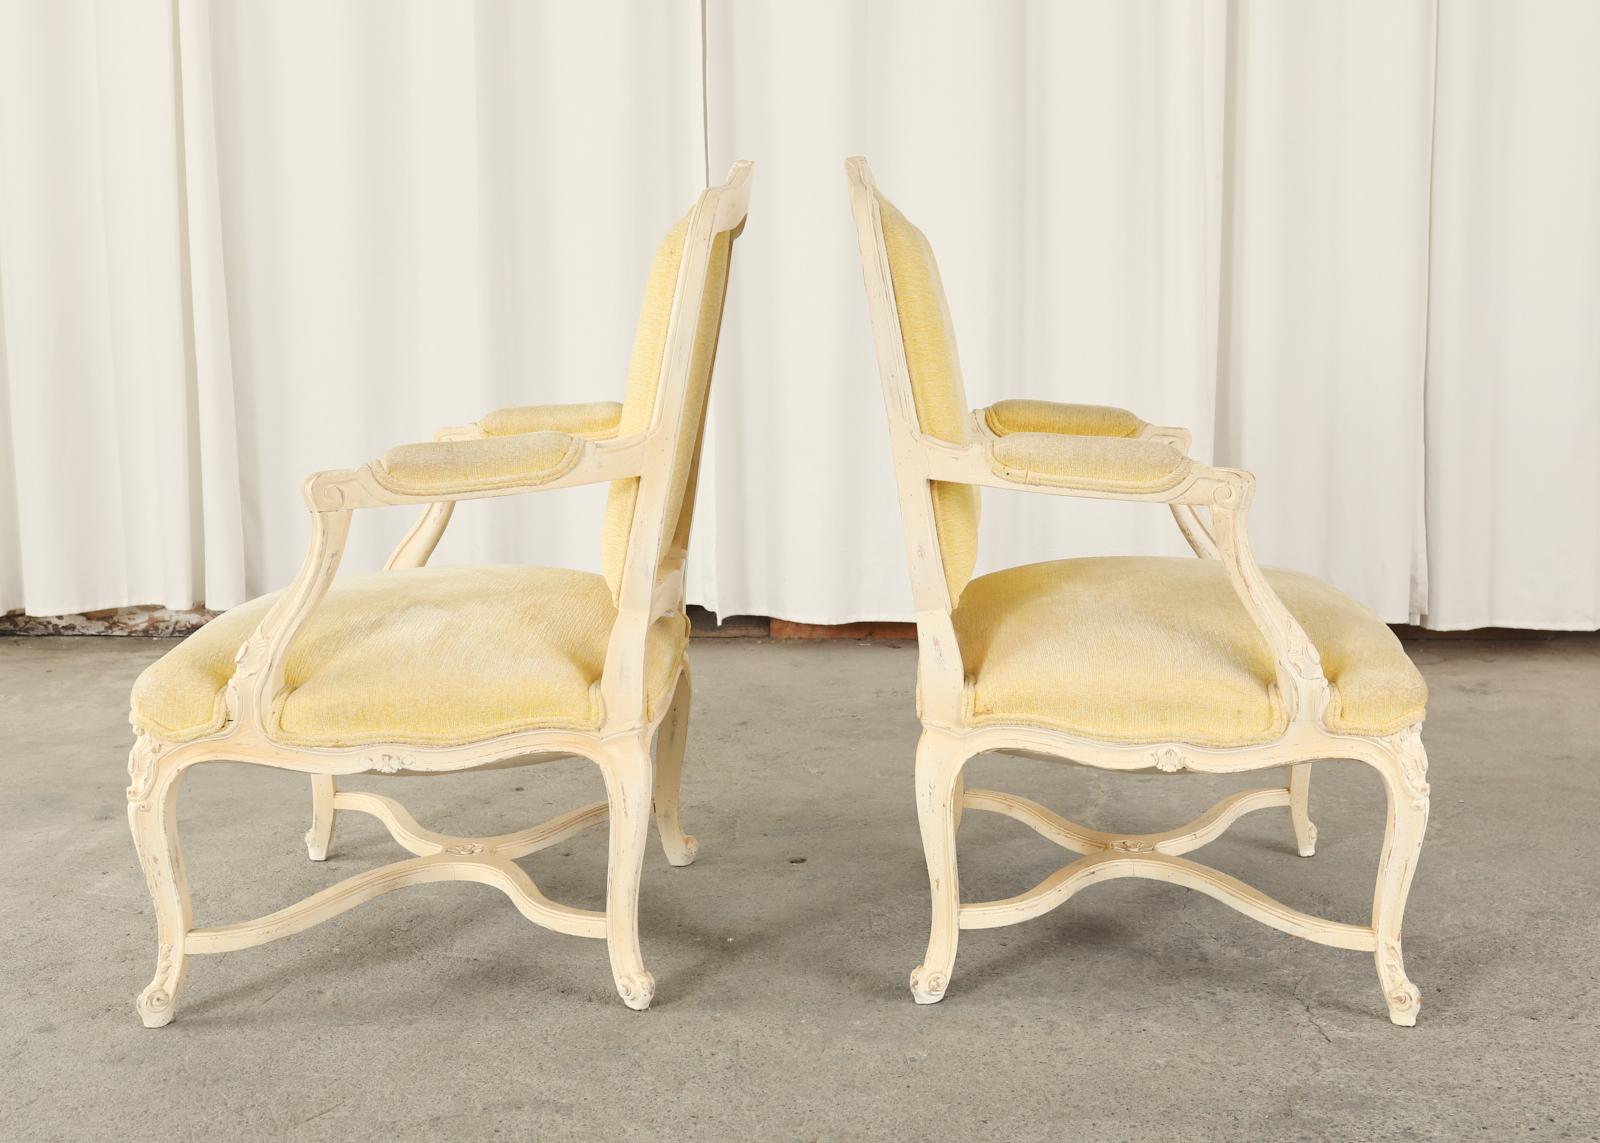 Zwei bemalte Fauteuil-Sessel im Stil der französischen Provinz oder des Louis XV. Das Set verfügt über einen großzügigen Sitzbereich mit einer Polsterung aus butterfarbenem Vintage-Samt. Die Rahmen haben eine große quadratische Rückenlehne mit